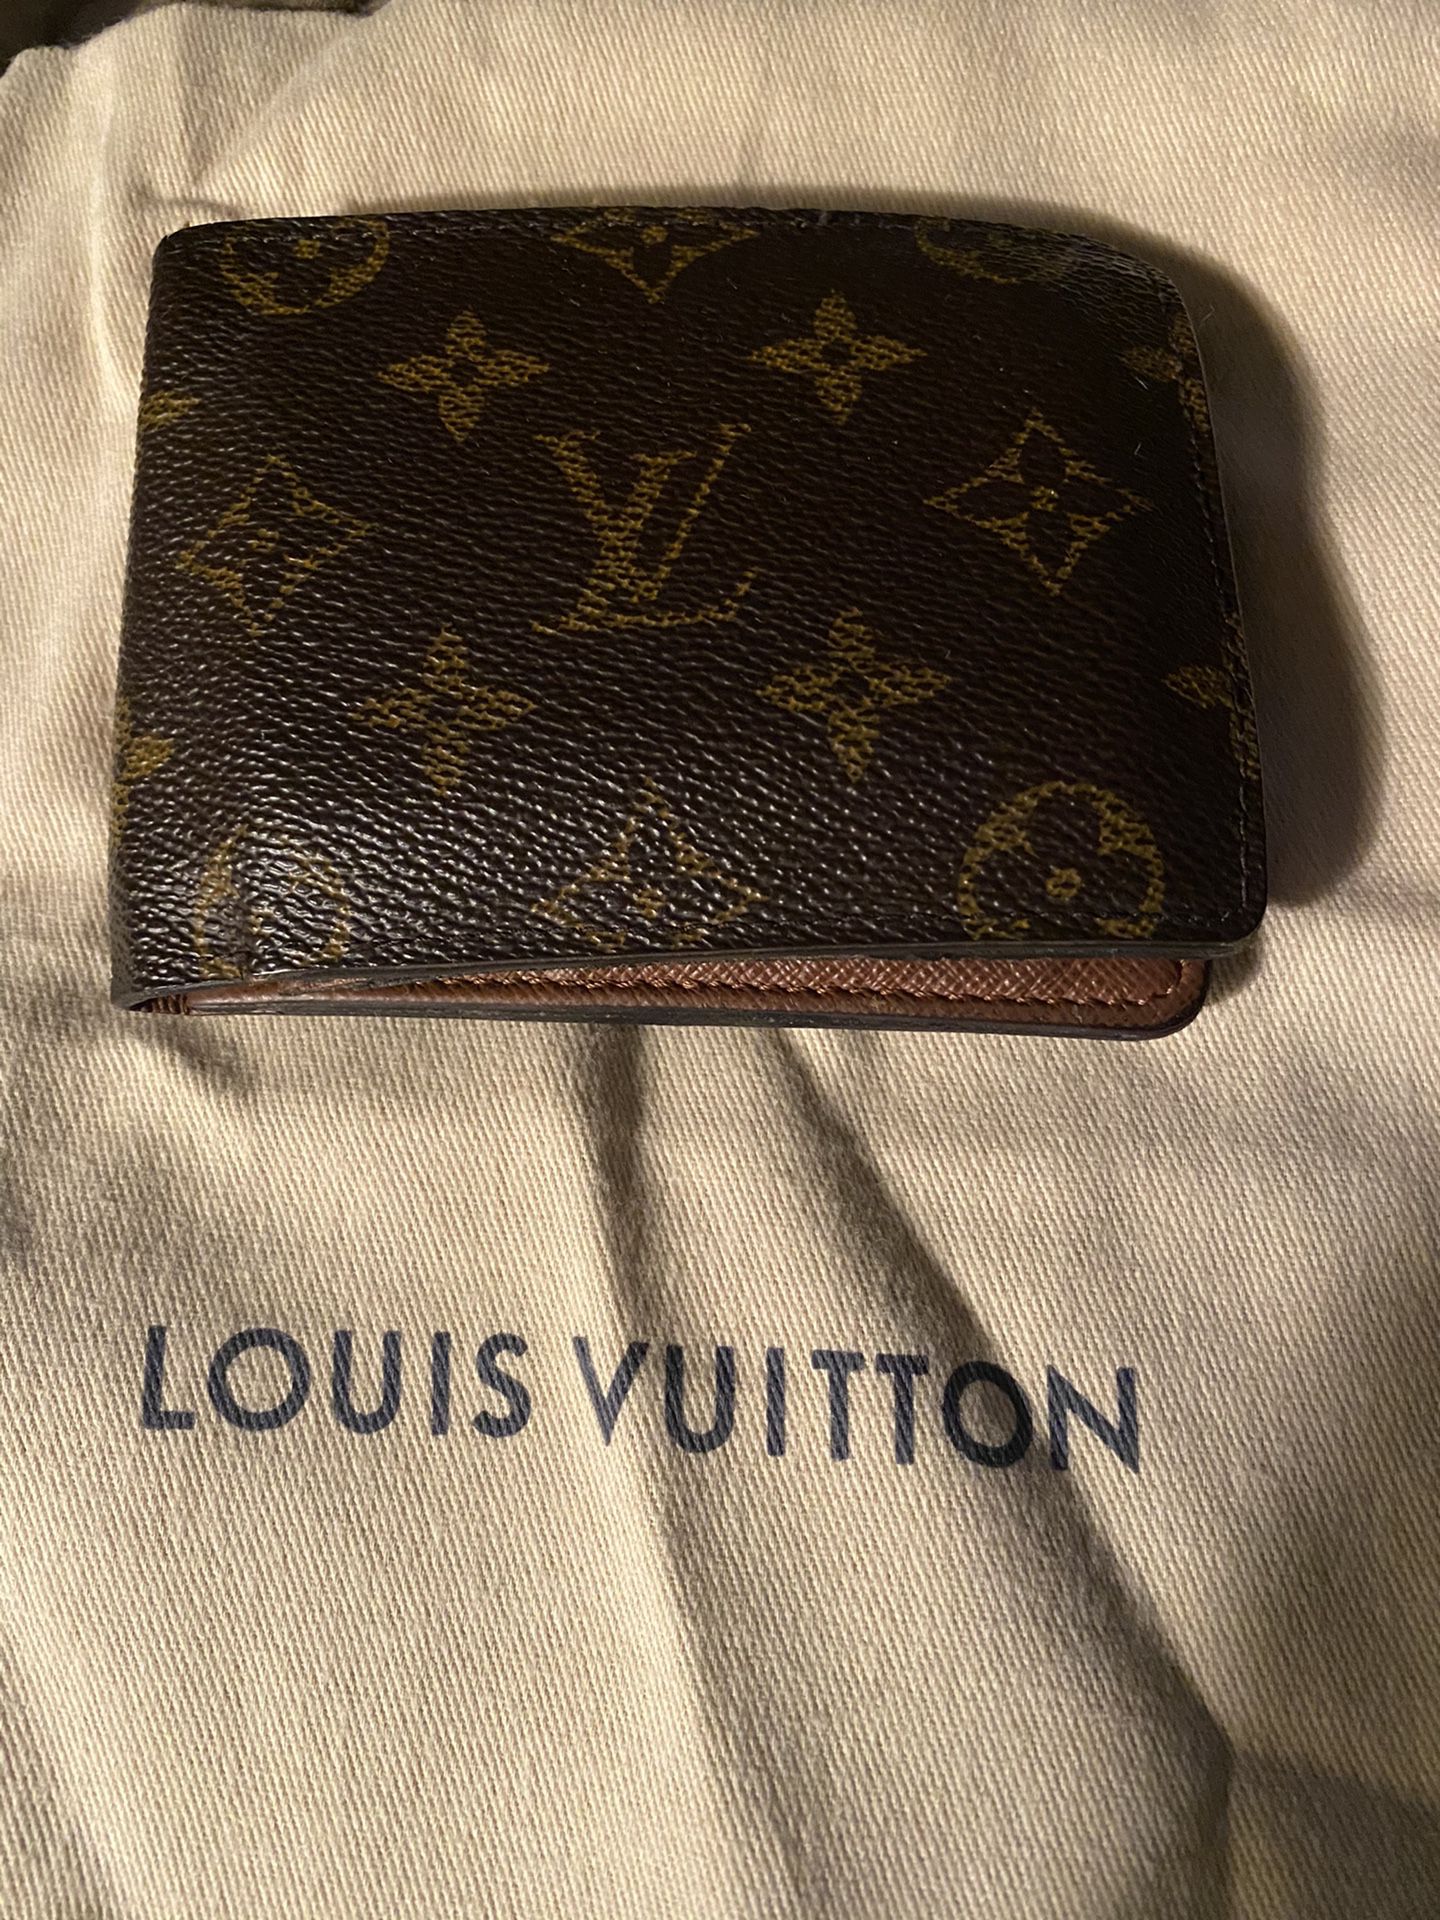 Men’s Authentic Louis Vuitton wallet